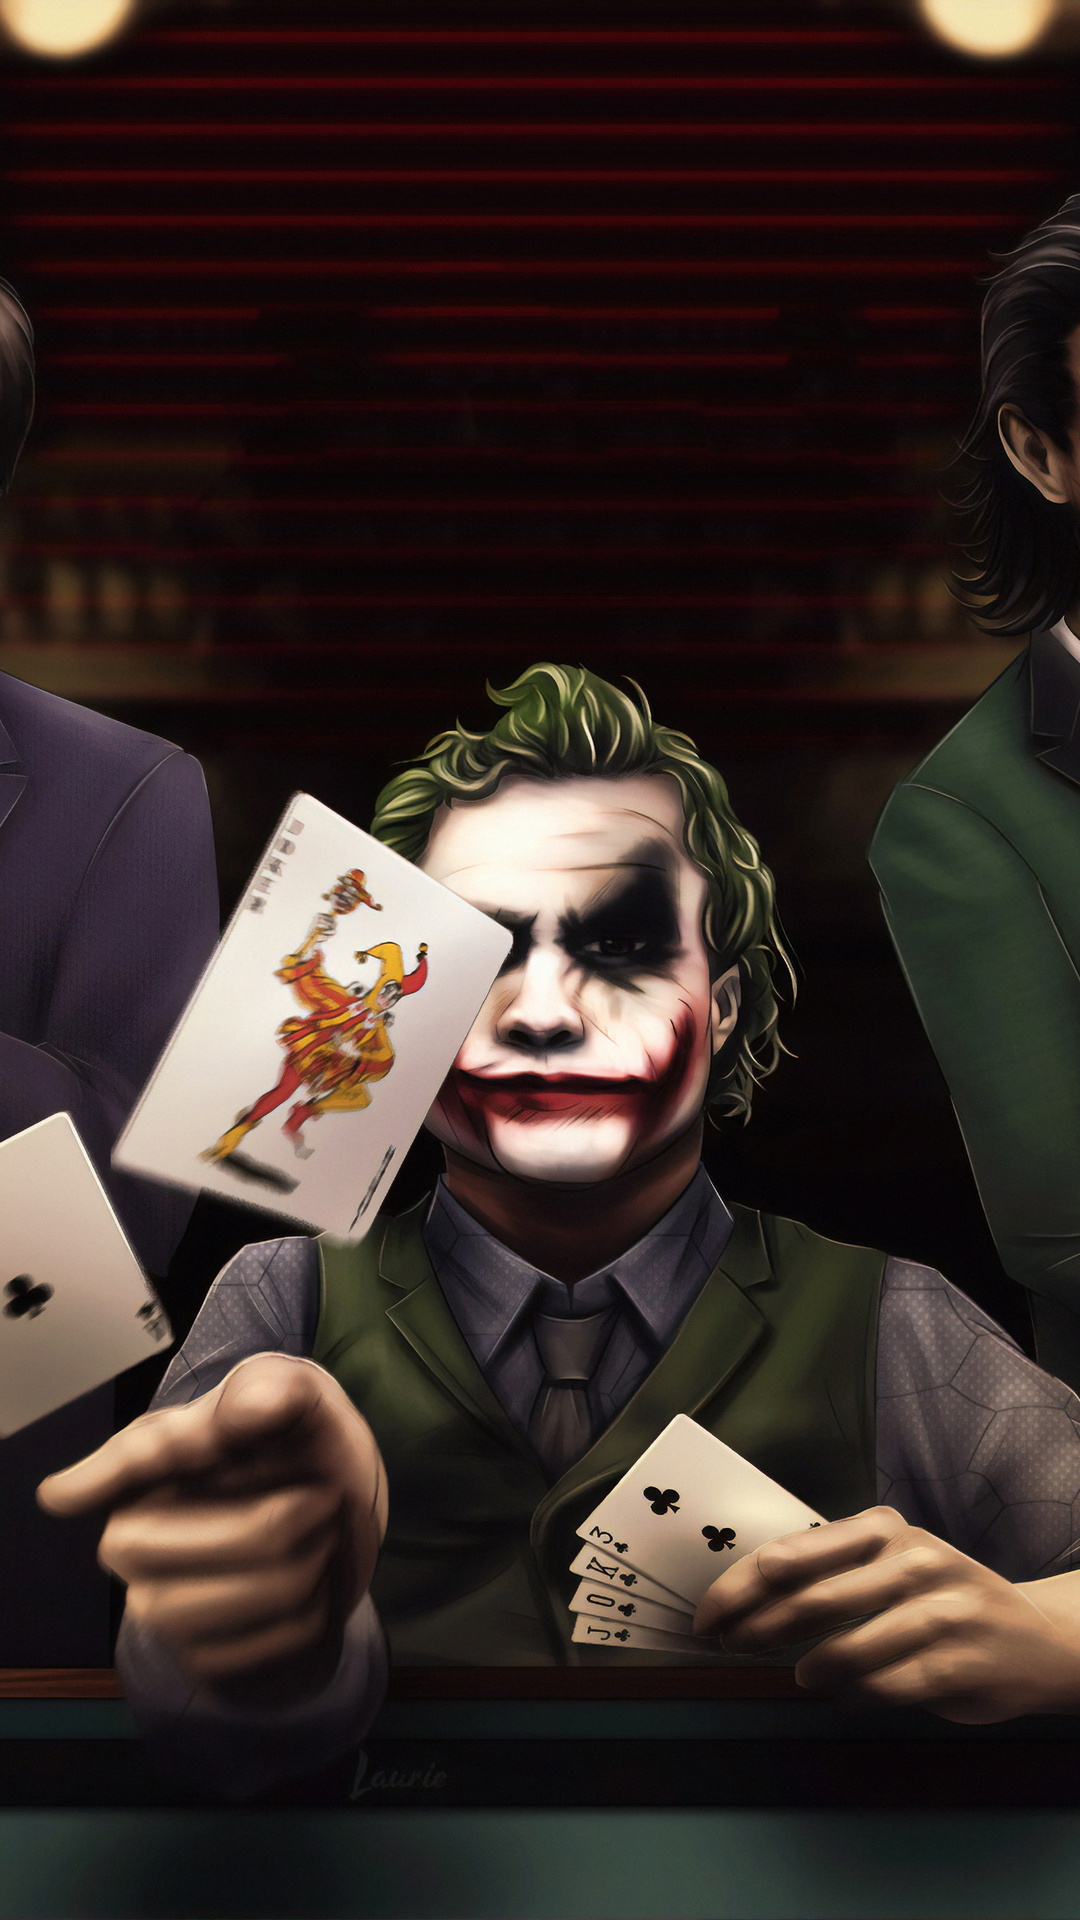 Joker666 casino как забрать возврат в joycasino